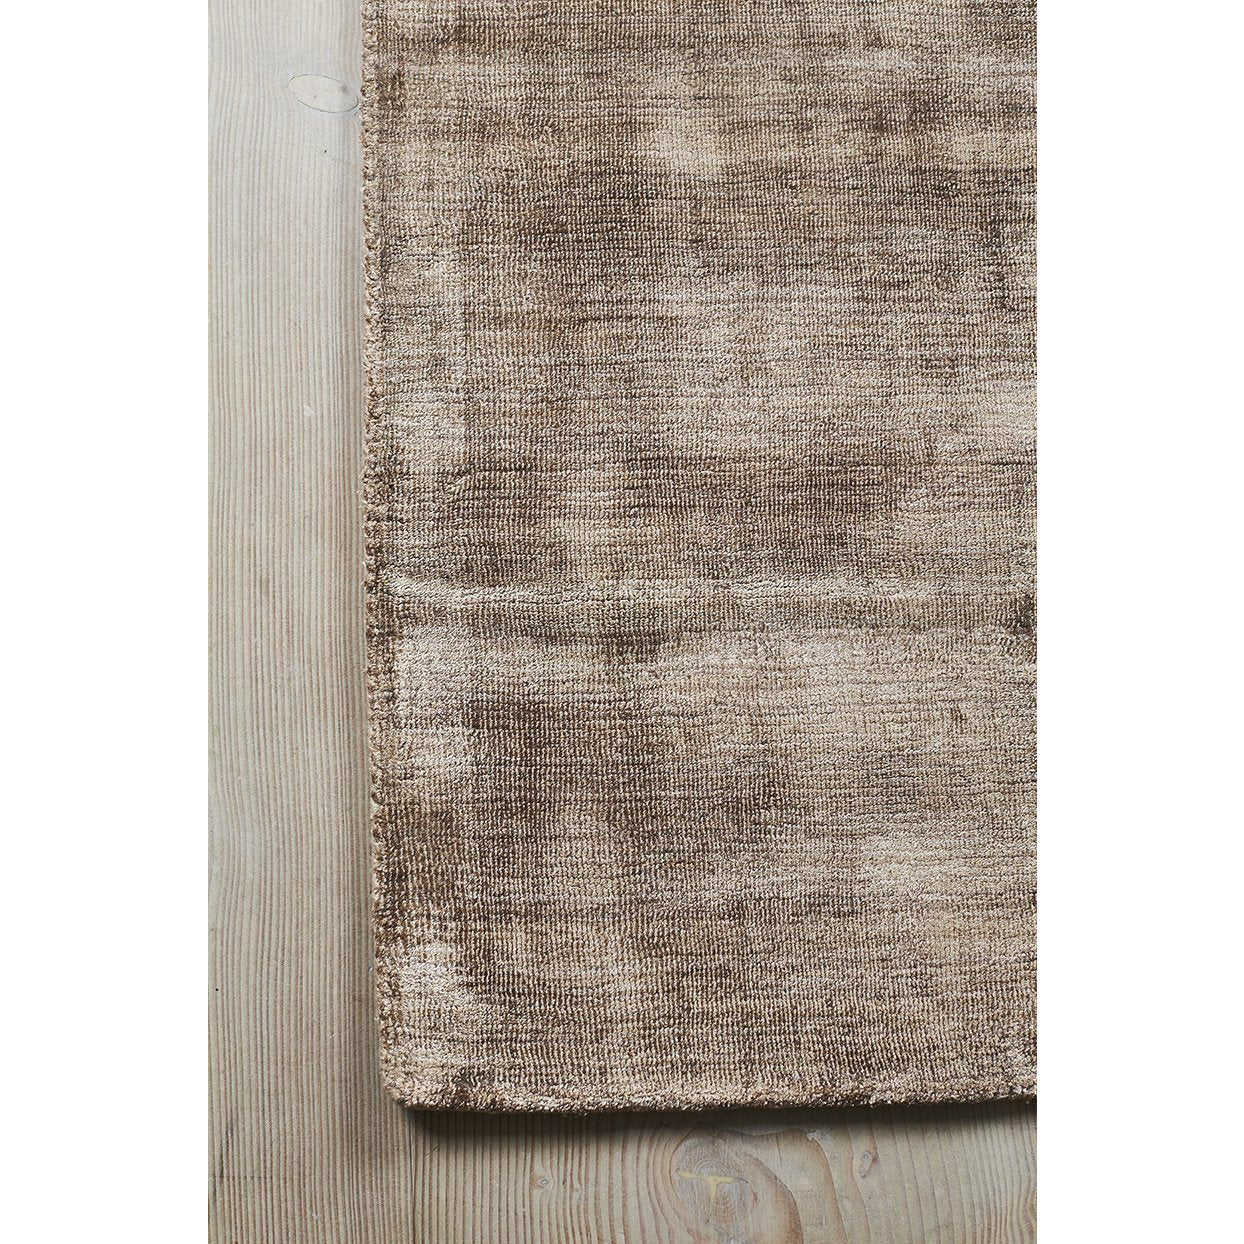 Massimo Karma tapijt nougat bruin, 160x230 cm